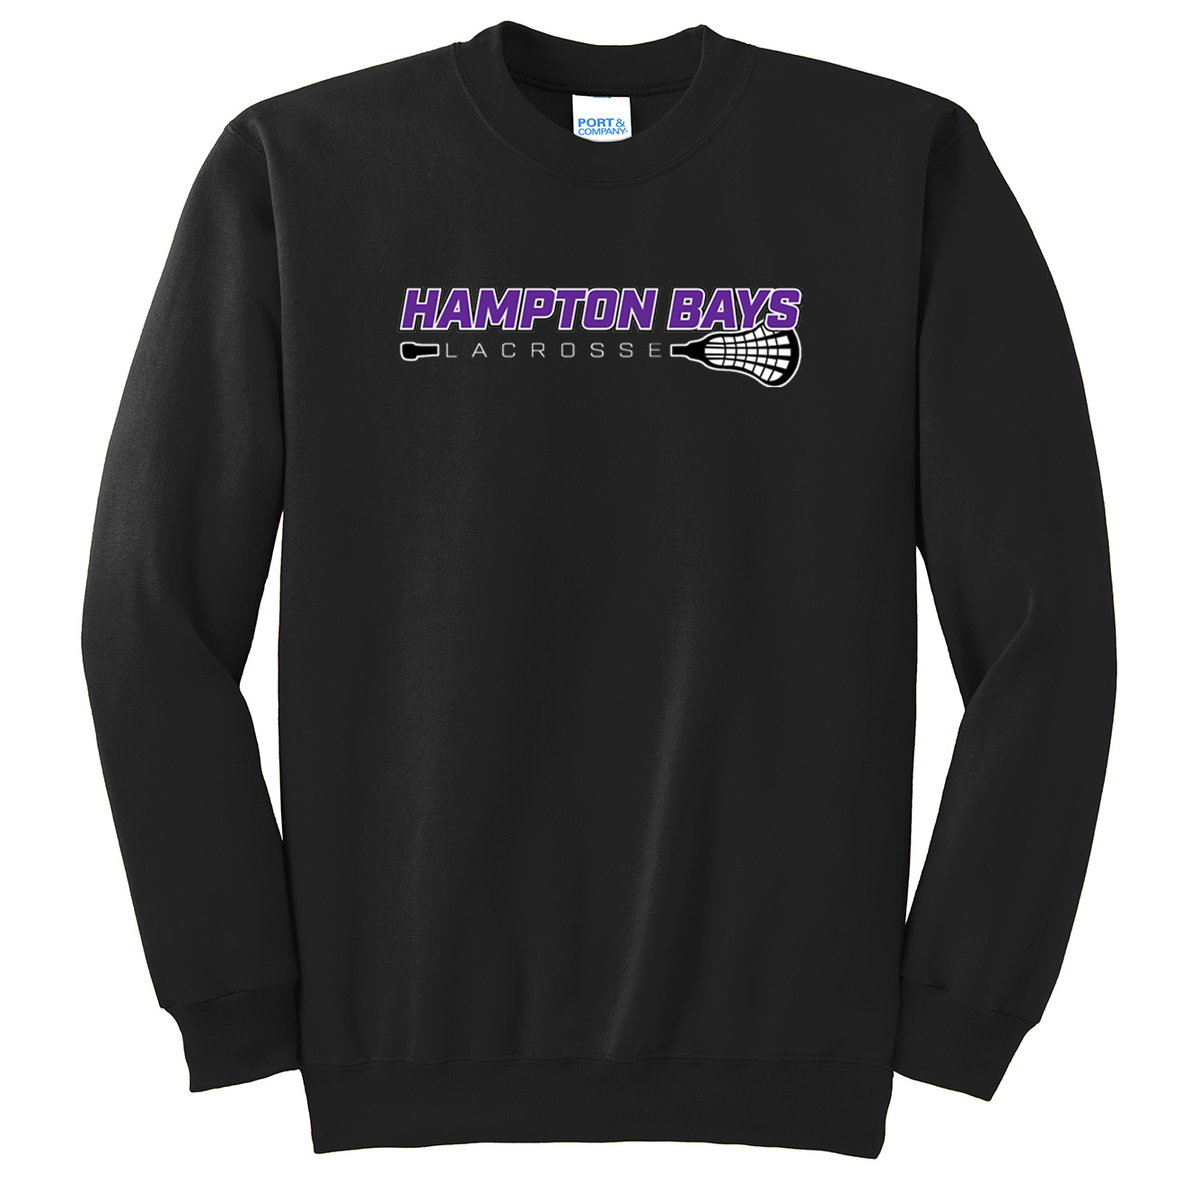 Hampton Bays Lacrosse Crew Neck Sweater